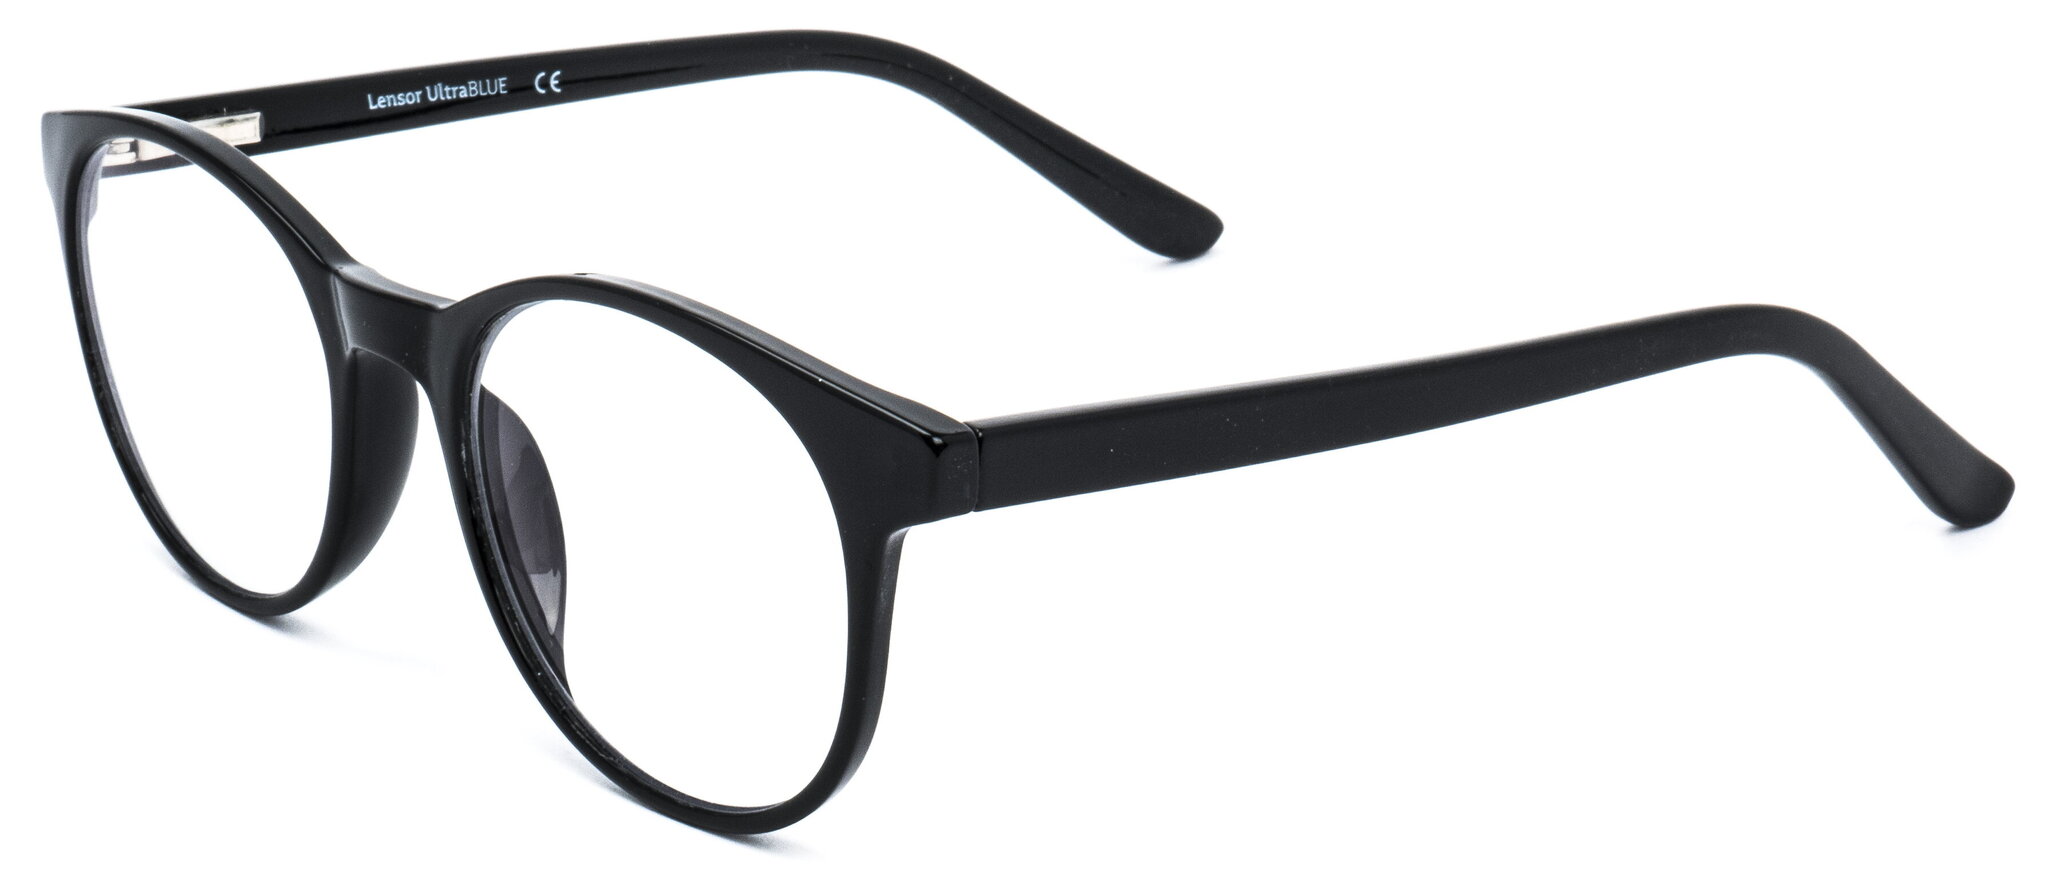 Apvalūs akiniai darbui kompiuteriu Lensor UltraBlue G125, 1 vnt. kaina ir informacija | Akiniai | pigu.lt